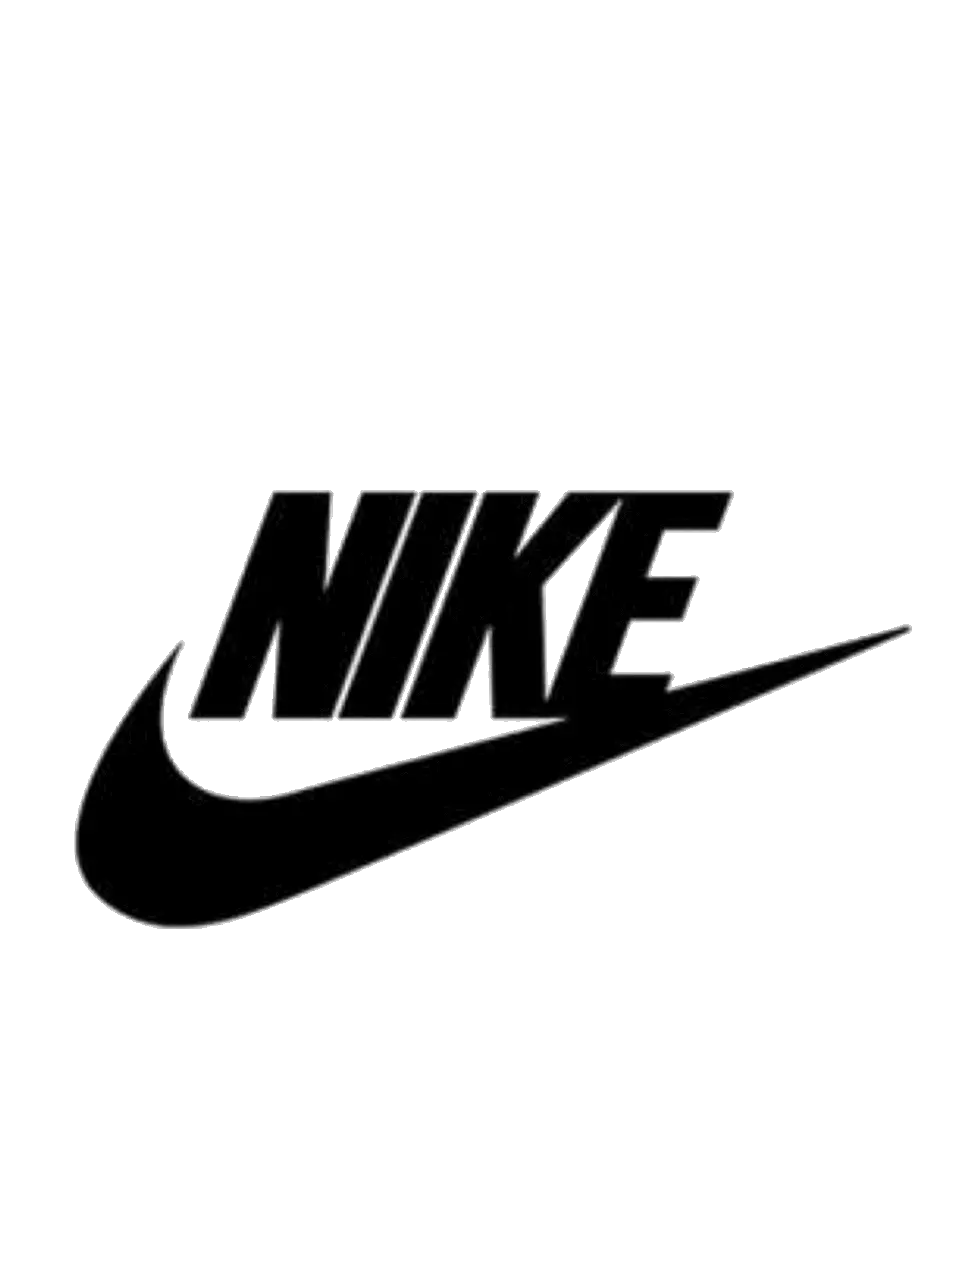 Logos Nike Png Images